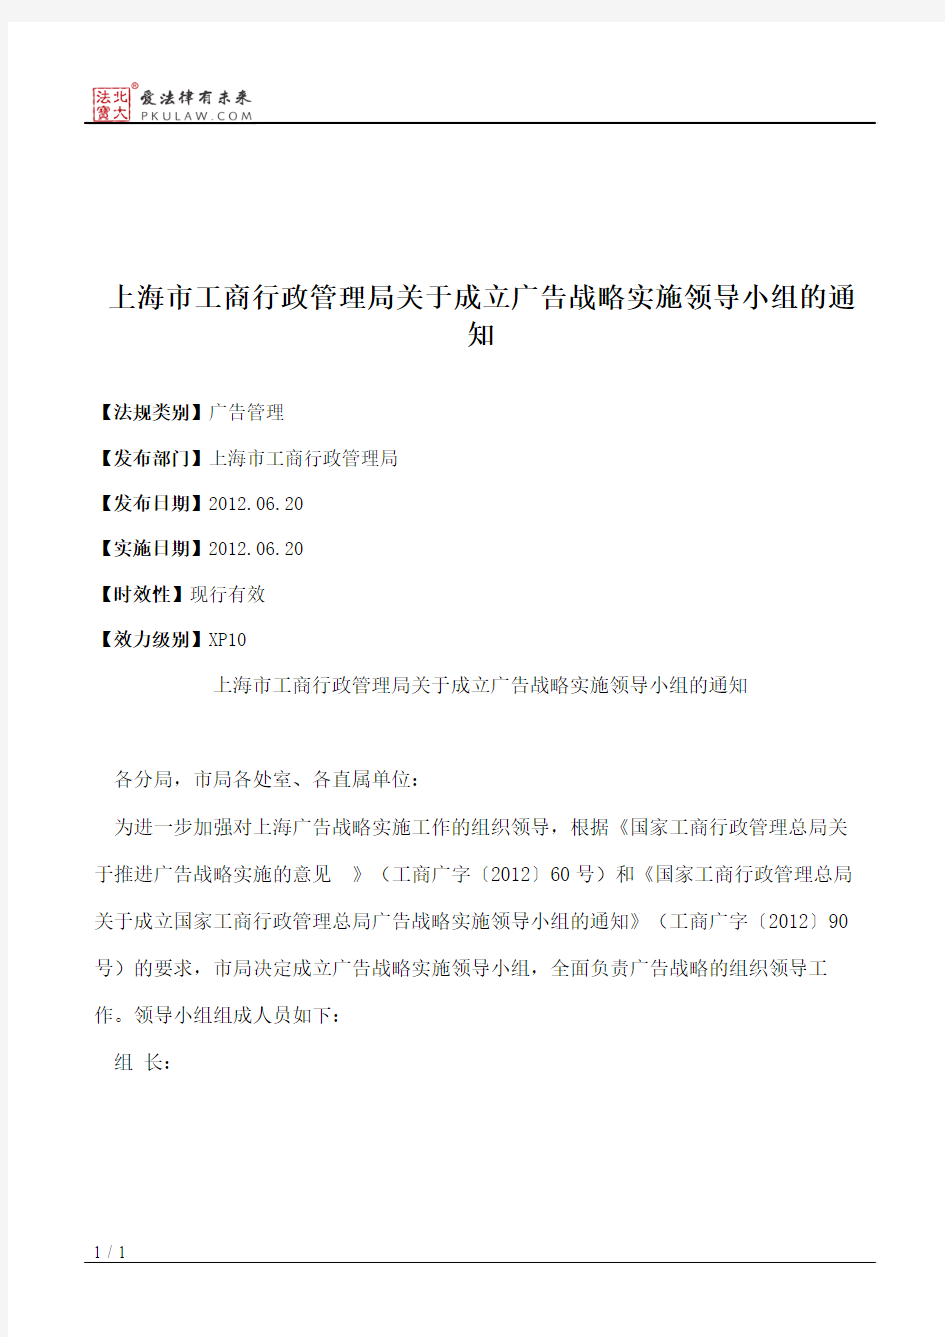 上海市工商行政管理局关于成立广告战略实施领导小组的通知